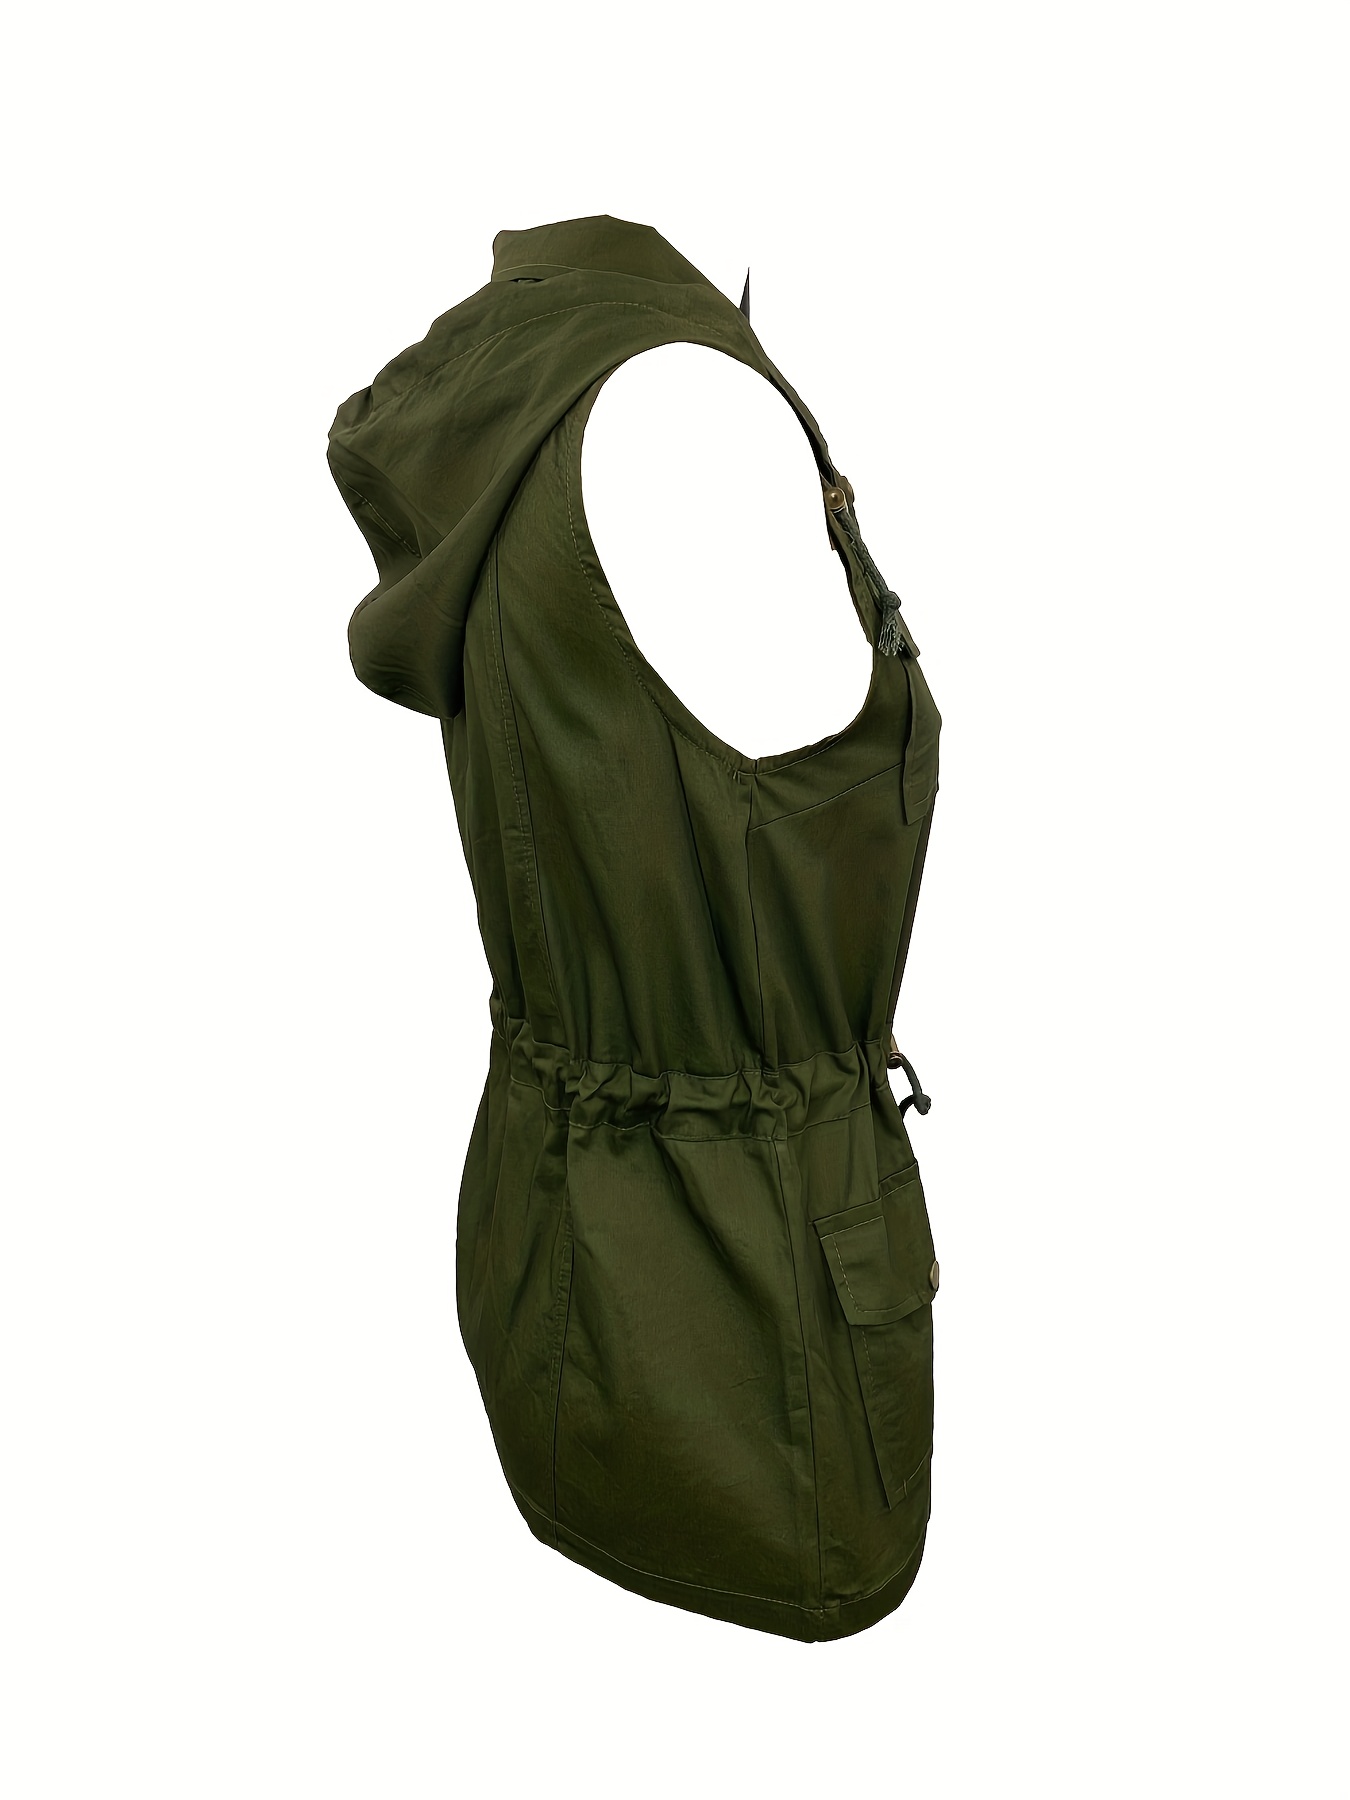 Women's Sleeveless Military Hooded Anorak Jacket Vest